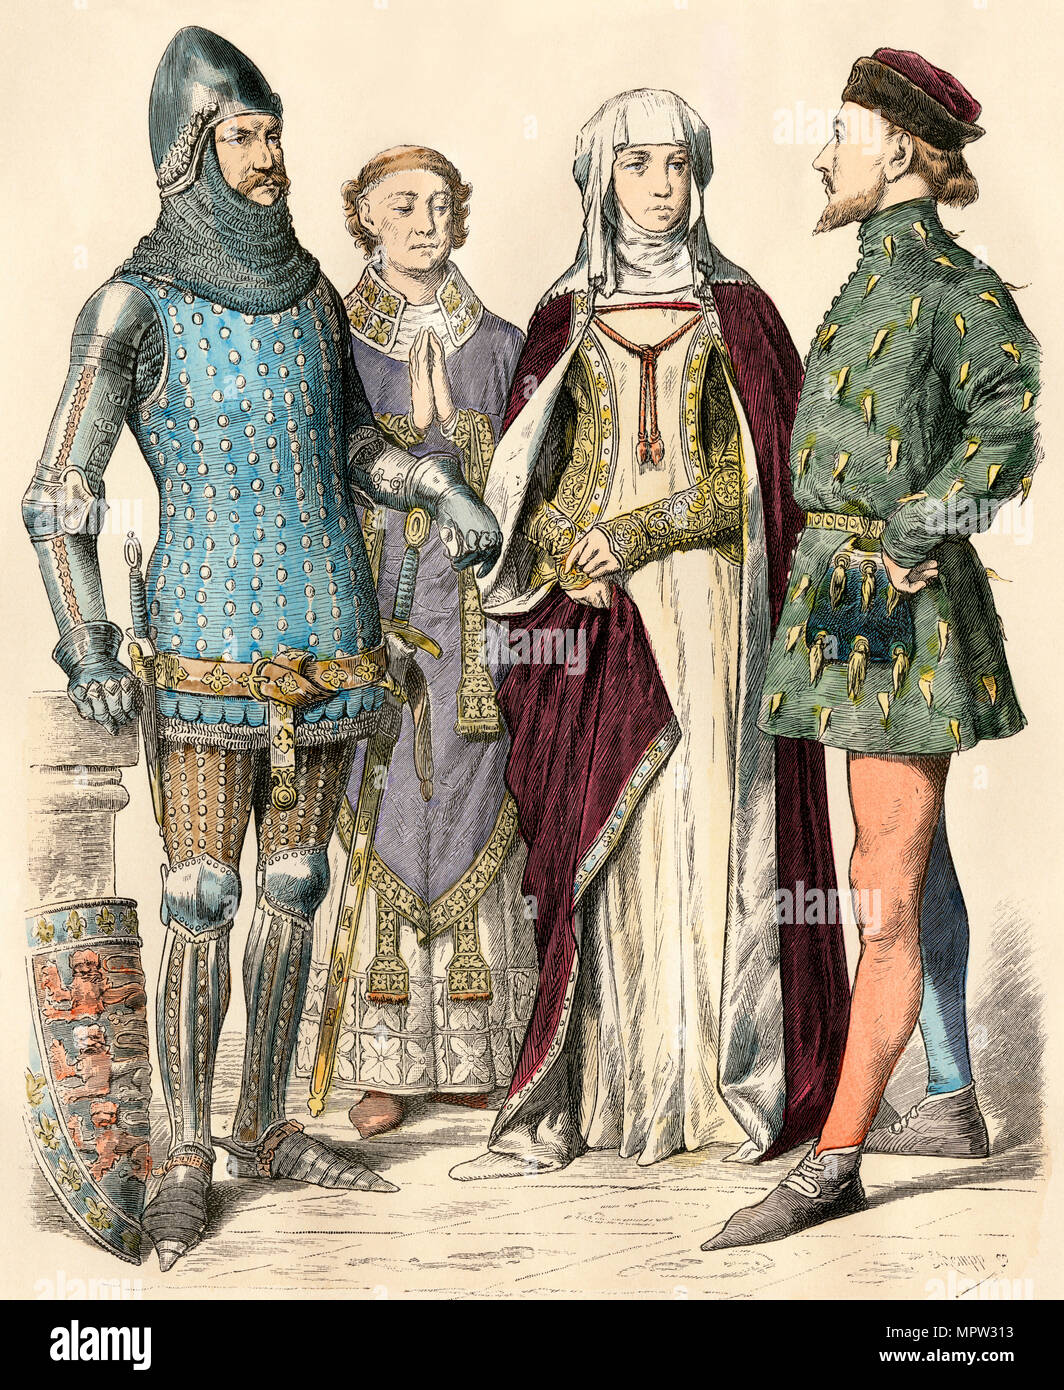 Costume médiéval de chevalier, l'évêque, dame, et gentleman. Impression couleur à la main Banque D'Images